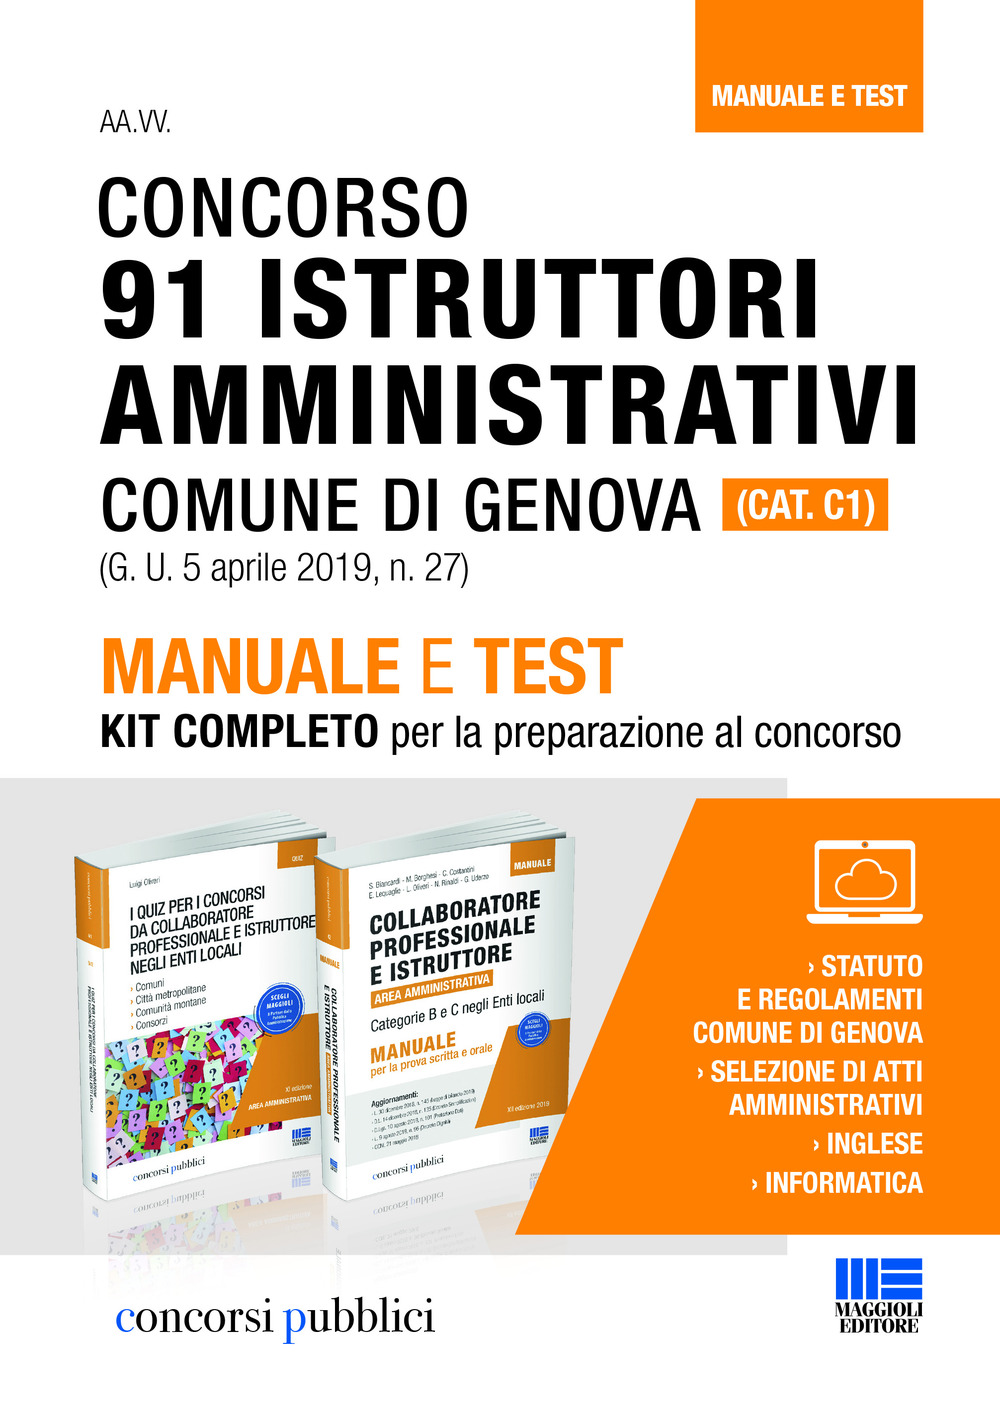 Concorso 91 istruttori amministrativi Comune di Genova (Cat. C1). Manuale e test. Kit completo per la preparazione al concorso